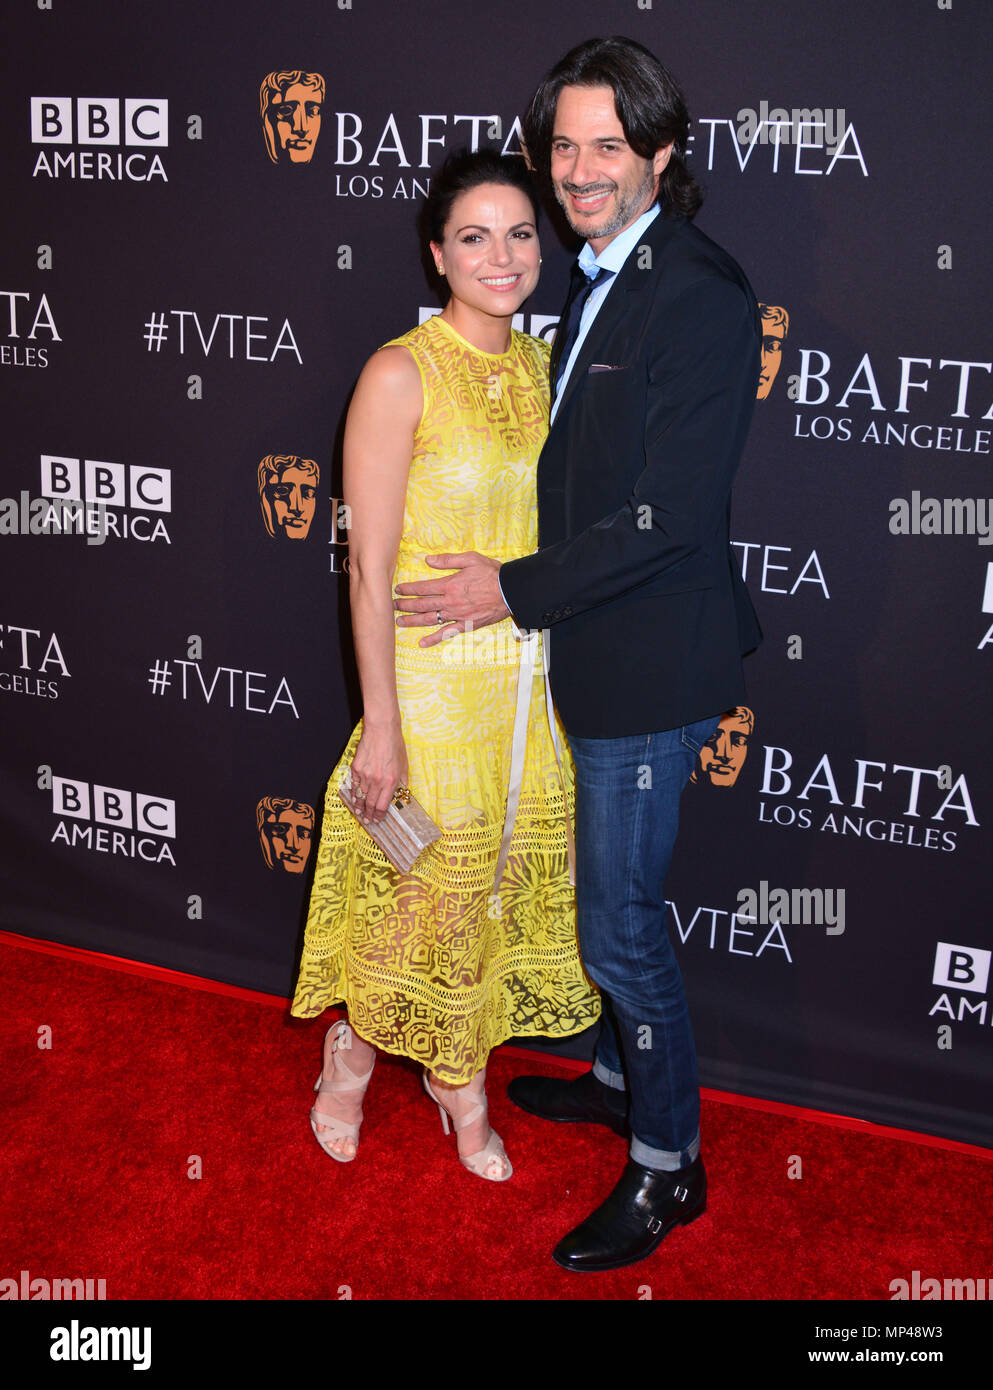 Lana Parrilla, Esposo Fred Di Blasio en los BAFTA Los Angeles TV 2015 té en  el SLS Hotel de Los Ángeles. Septiembre 19, 2015.Lana Parrilla, Esposo Fred  Di Blasio ------------- evento de